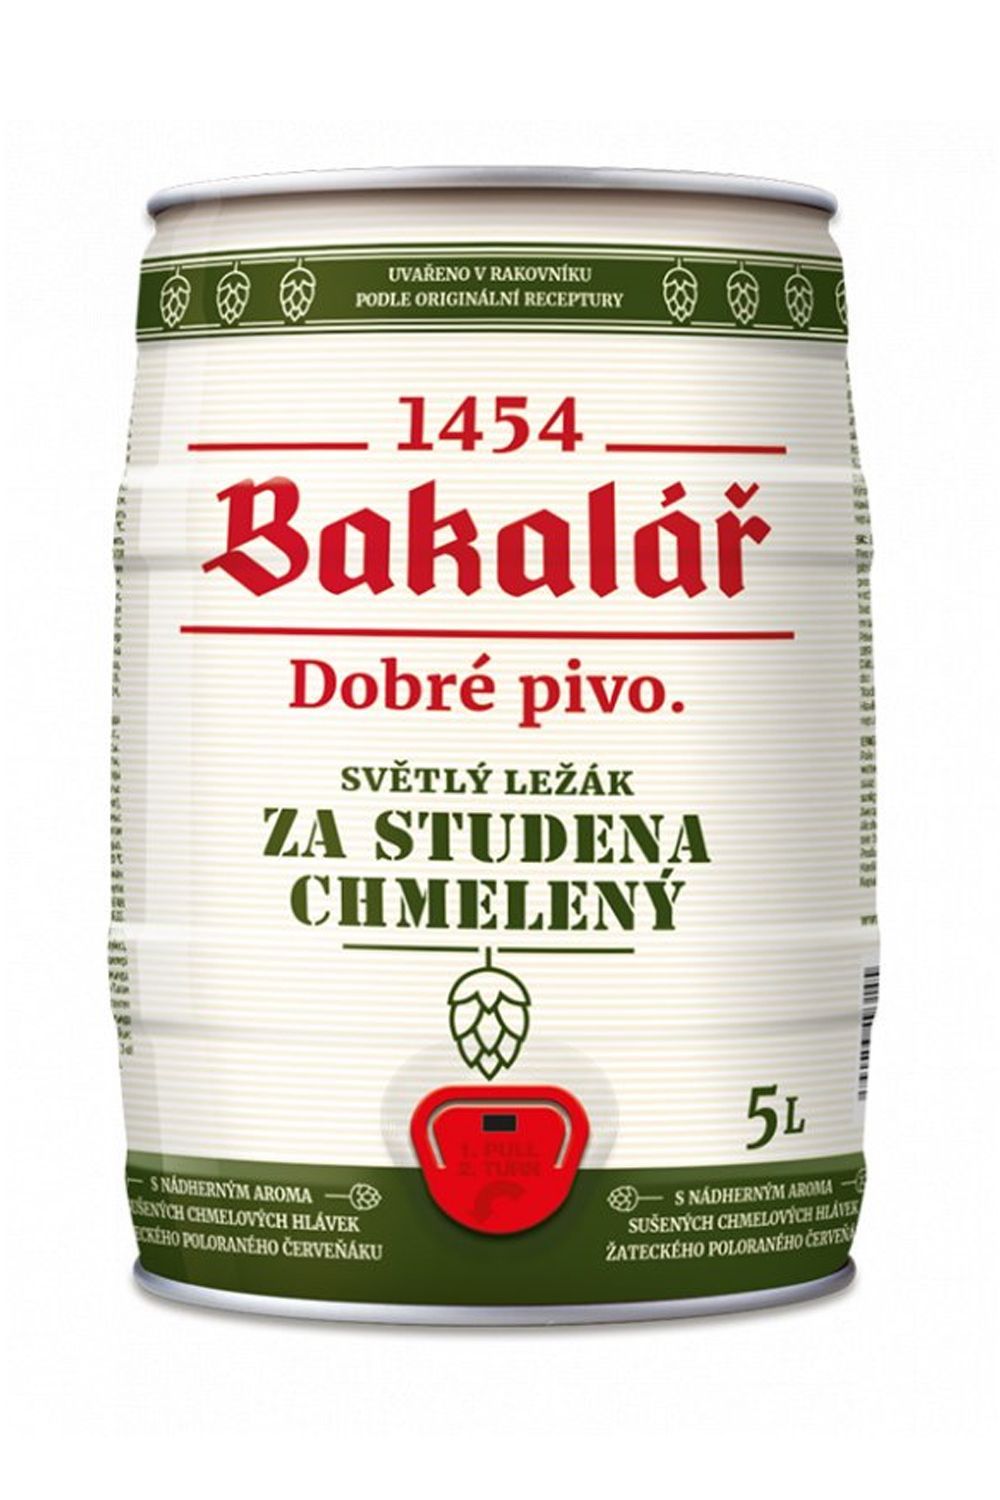 Пиво Бакалар 5,2% ж/б 5,0 л (Чехия)